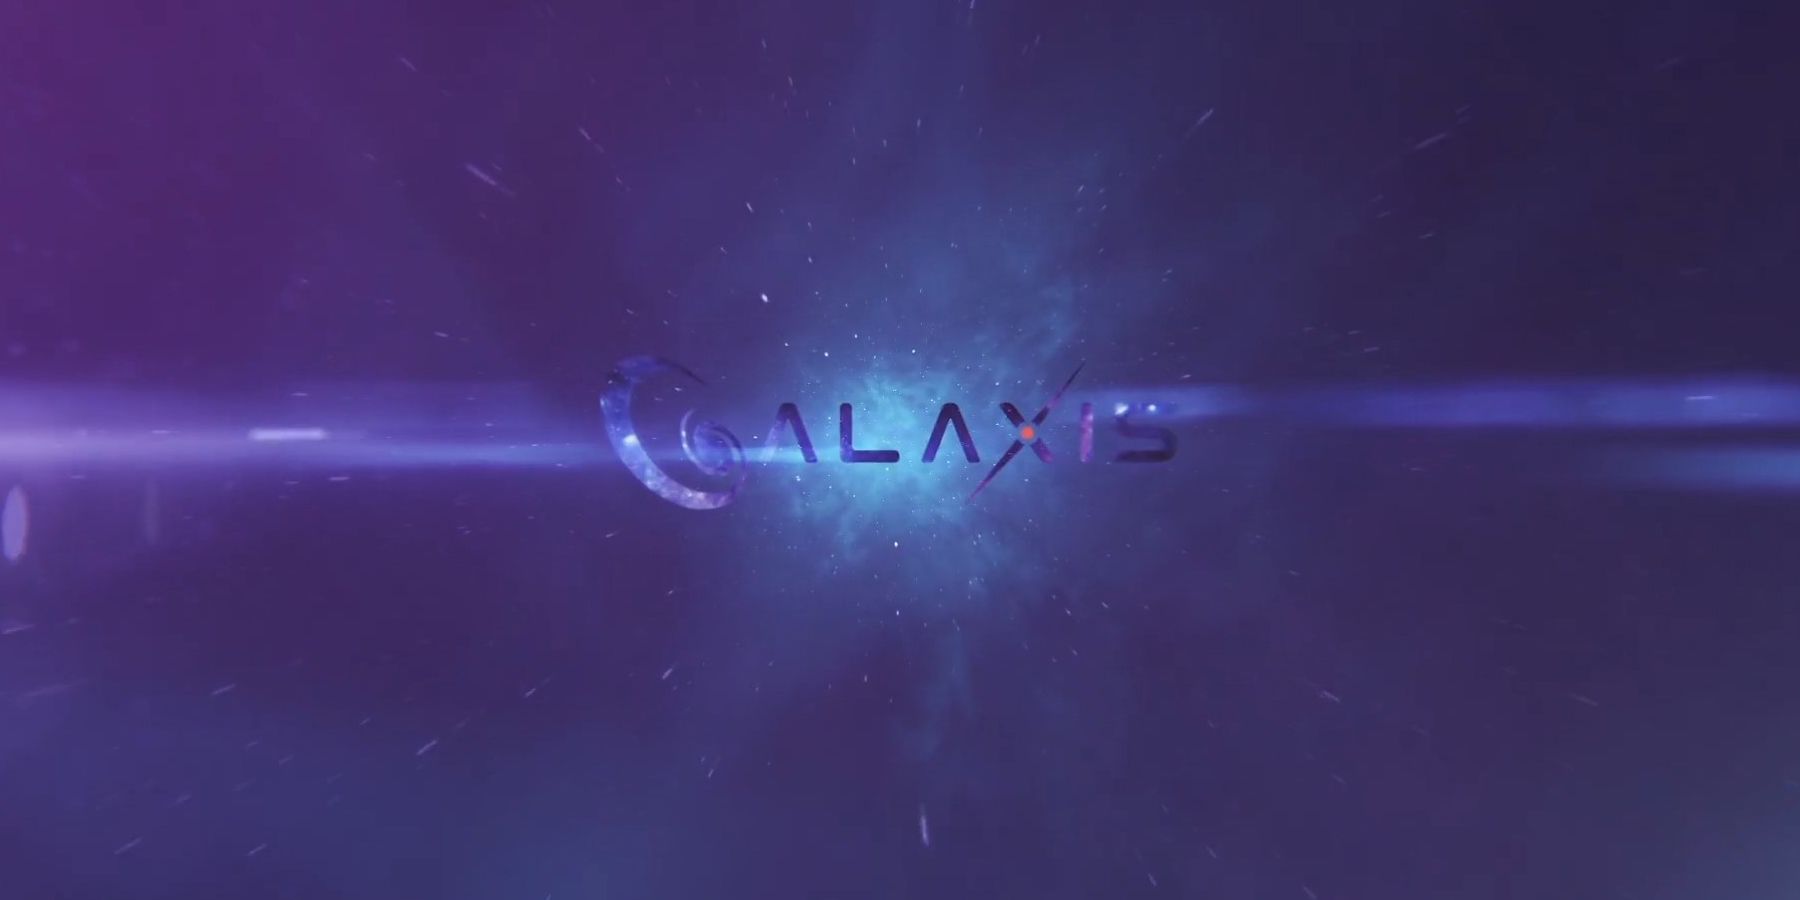 Wywiad Galaxis: CEO Max Gallardo szczegółowo opisuje systemy punktowe platformy strumieniowej, moderacja społeczności i wiele innych